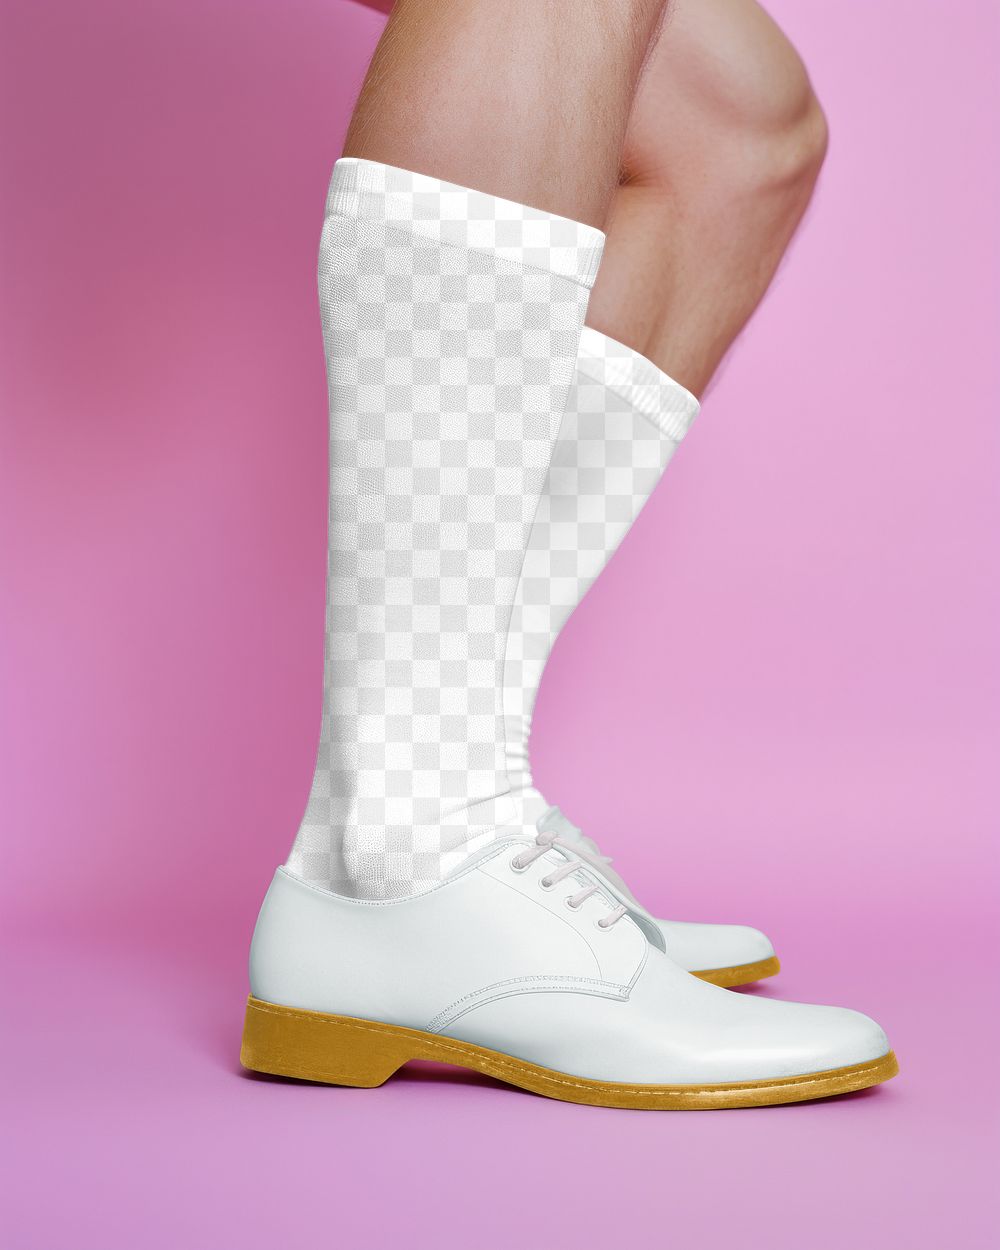 PNG half knee high socks & shoes mockup, transparent design